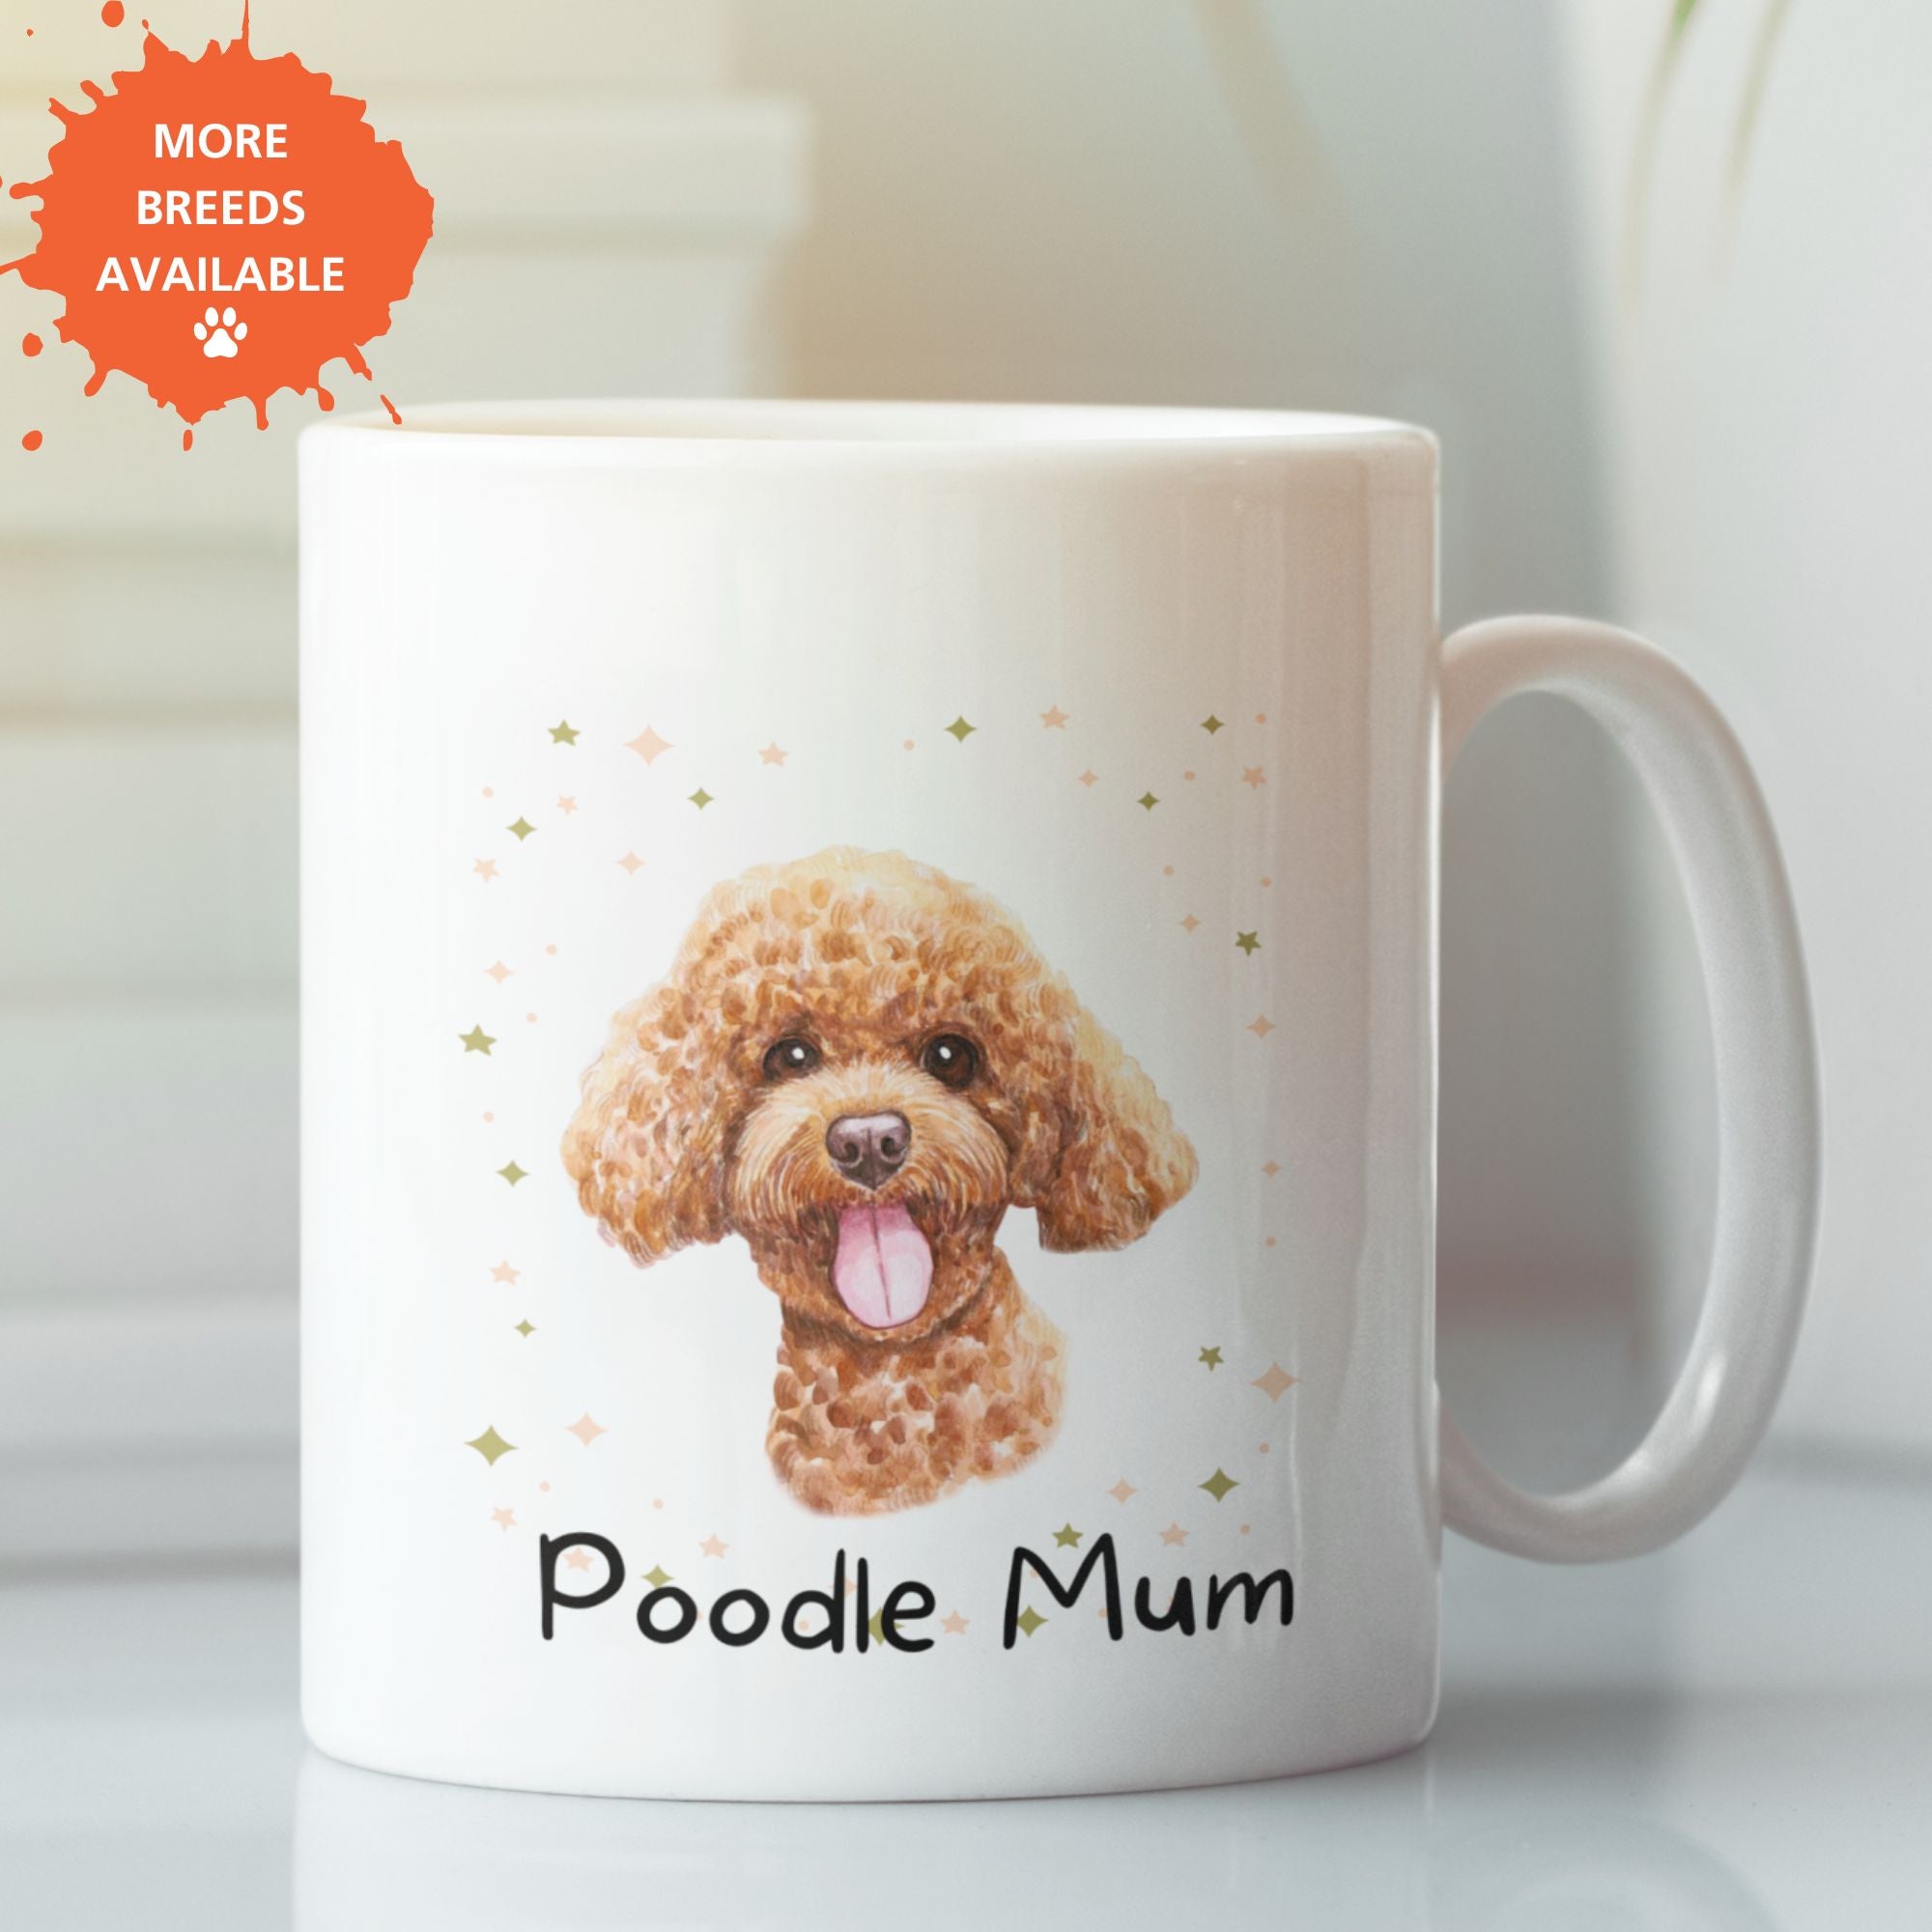 Dog Breed Mum Mug Ceramic 11oz - Dog Mum Gift - Sweetie